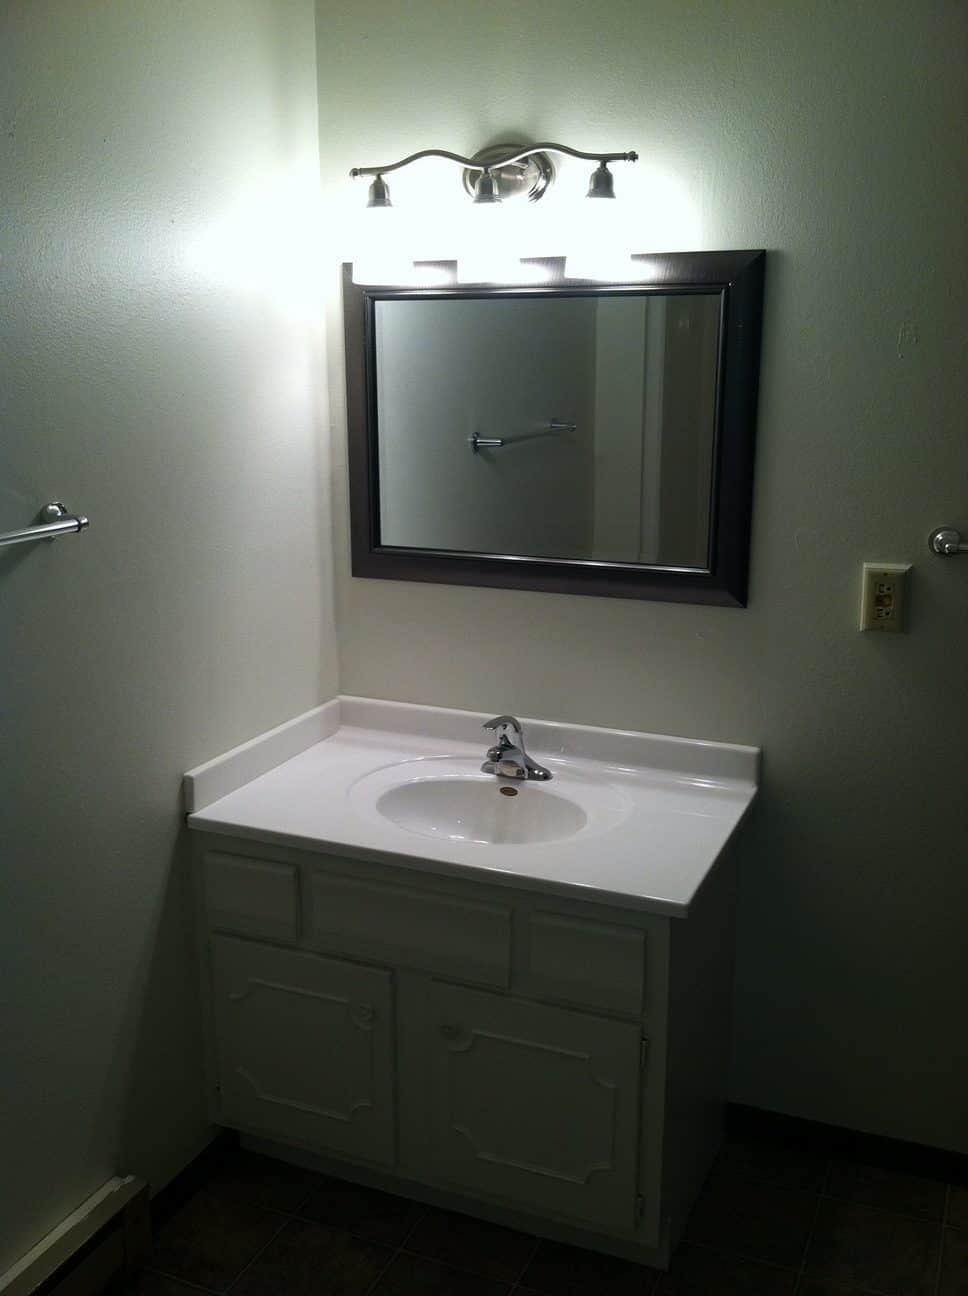 4820 W Fifth Street Bathroom Vanity